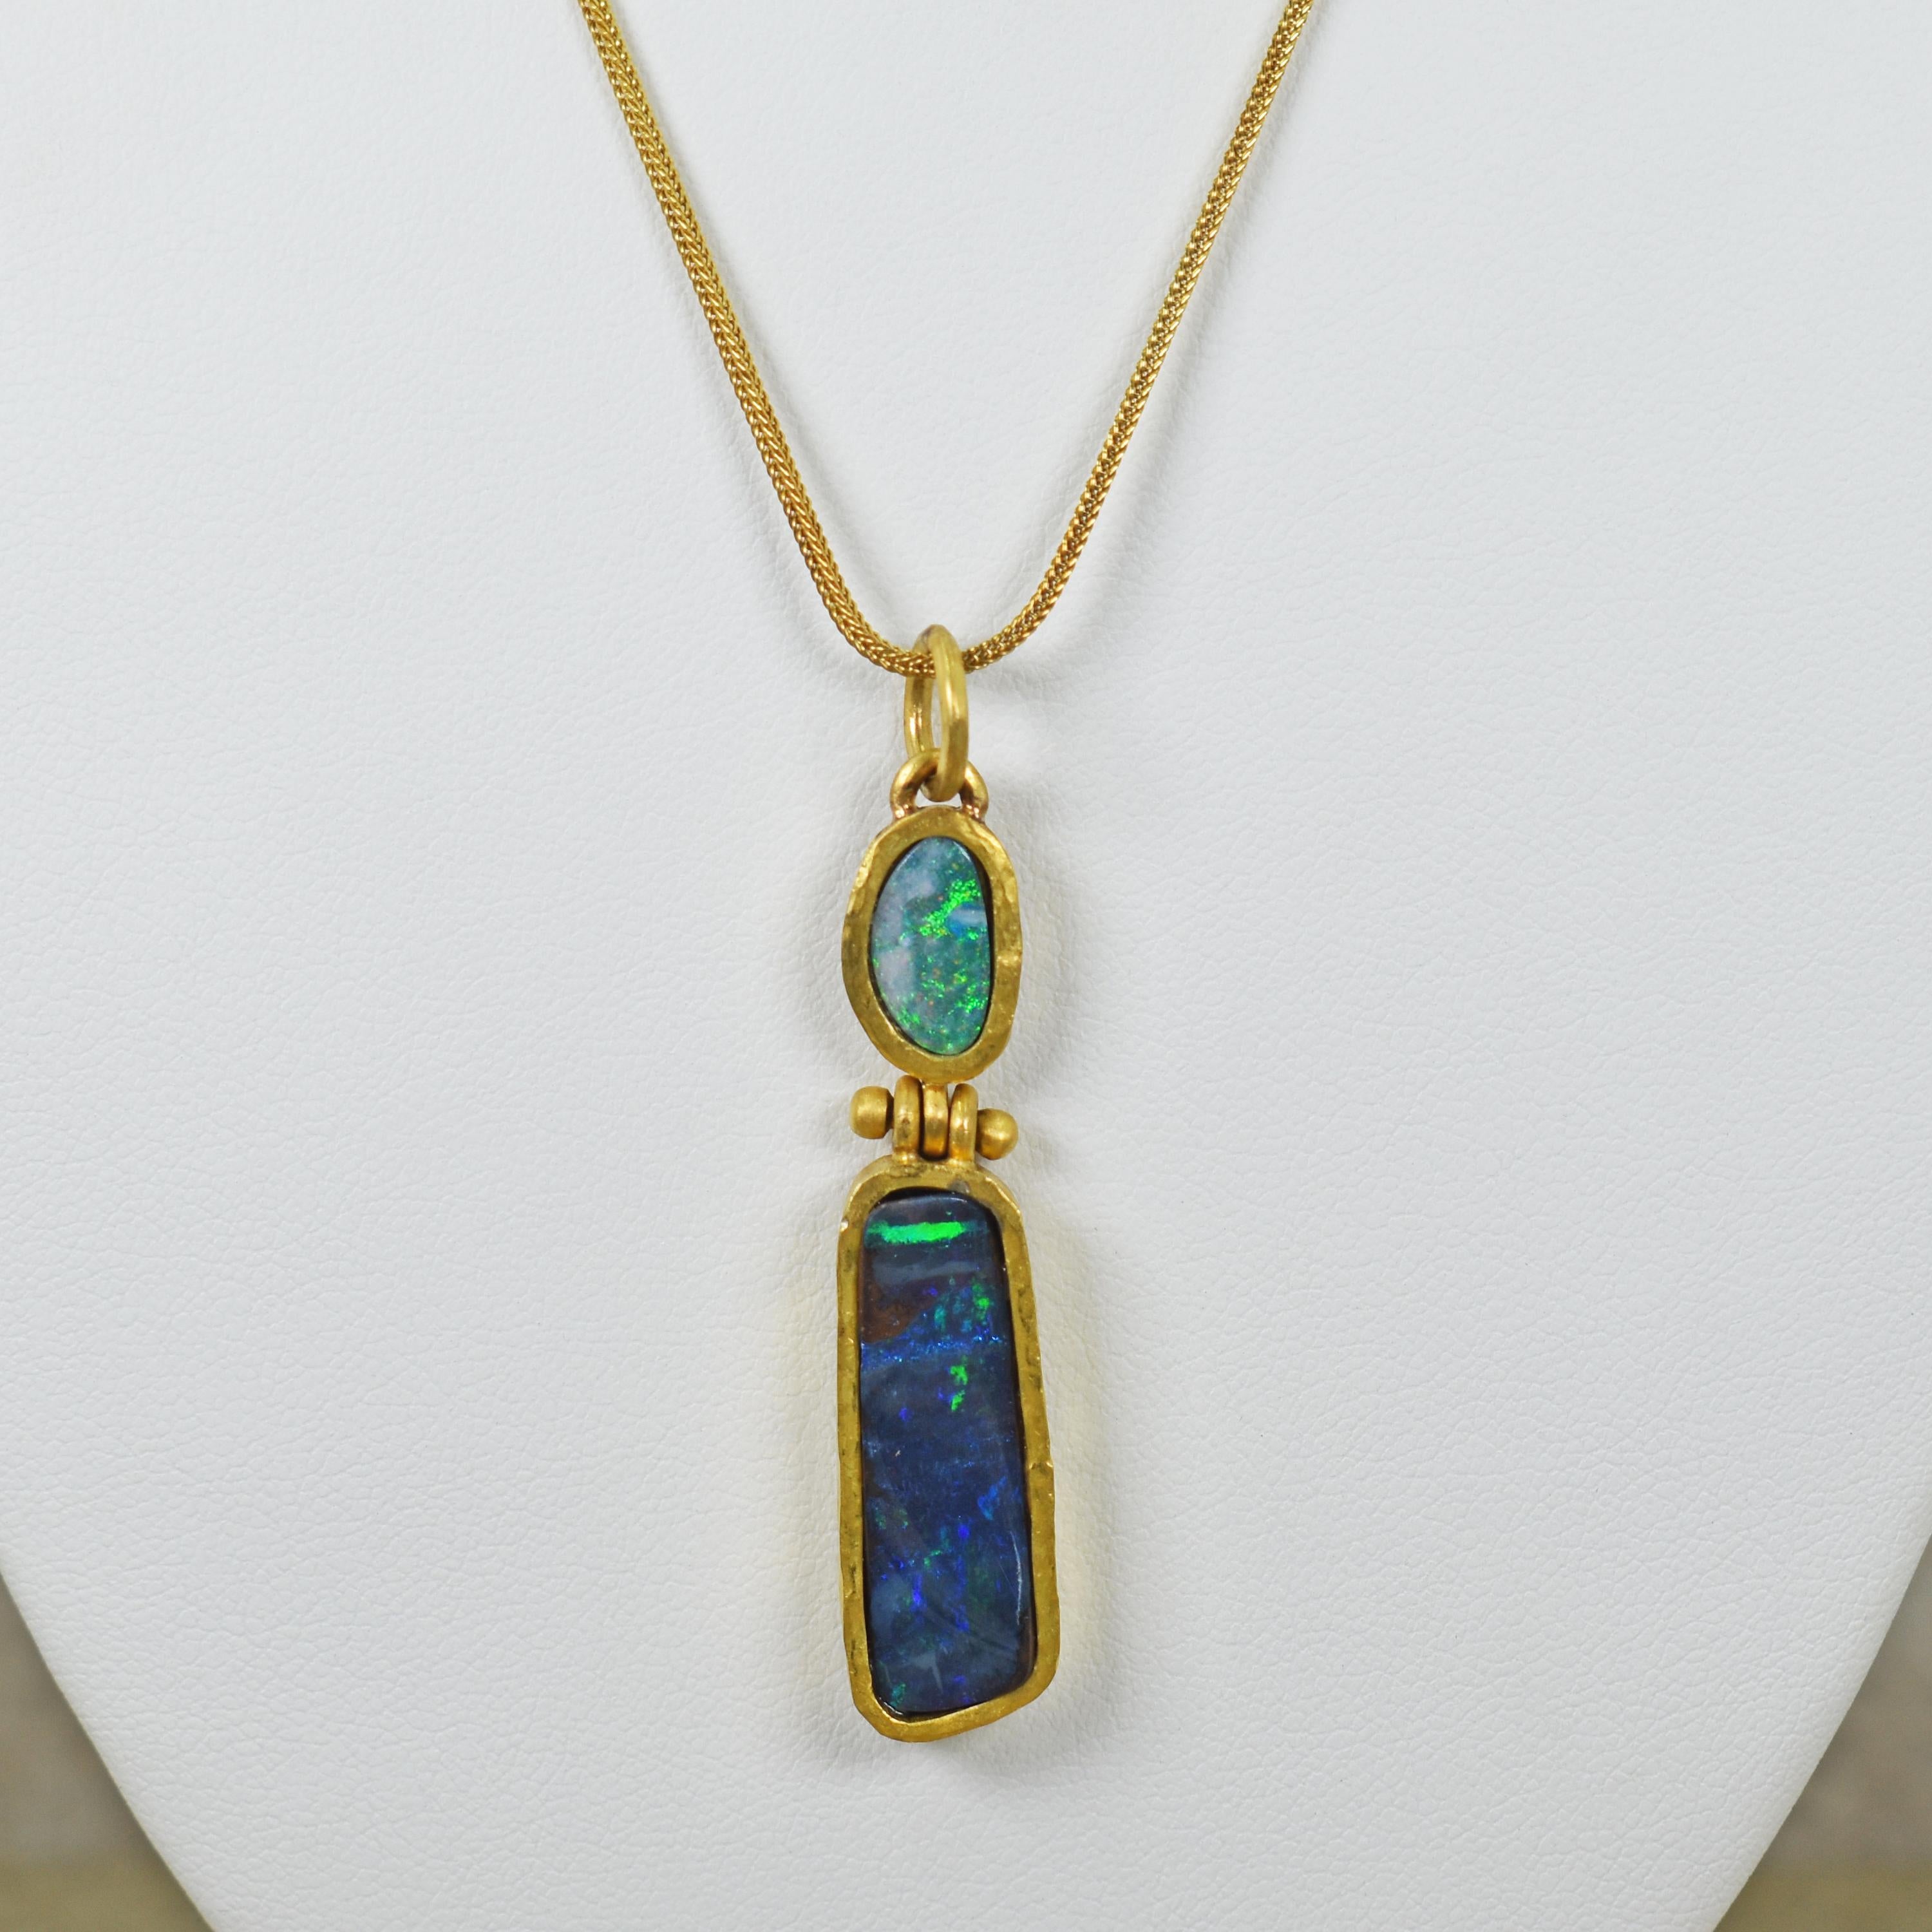 De superbes opales australiennes vertes et bleues dans un pendentif articulé en or jaune 22k forgé à la main. Le pendentif en opale à deux pierres est monté sur un collier en chaîne Foxtail en or 18k. Le pendentif, y compris la boucle, mesure 2,25